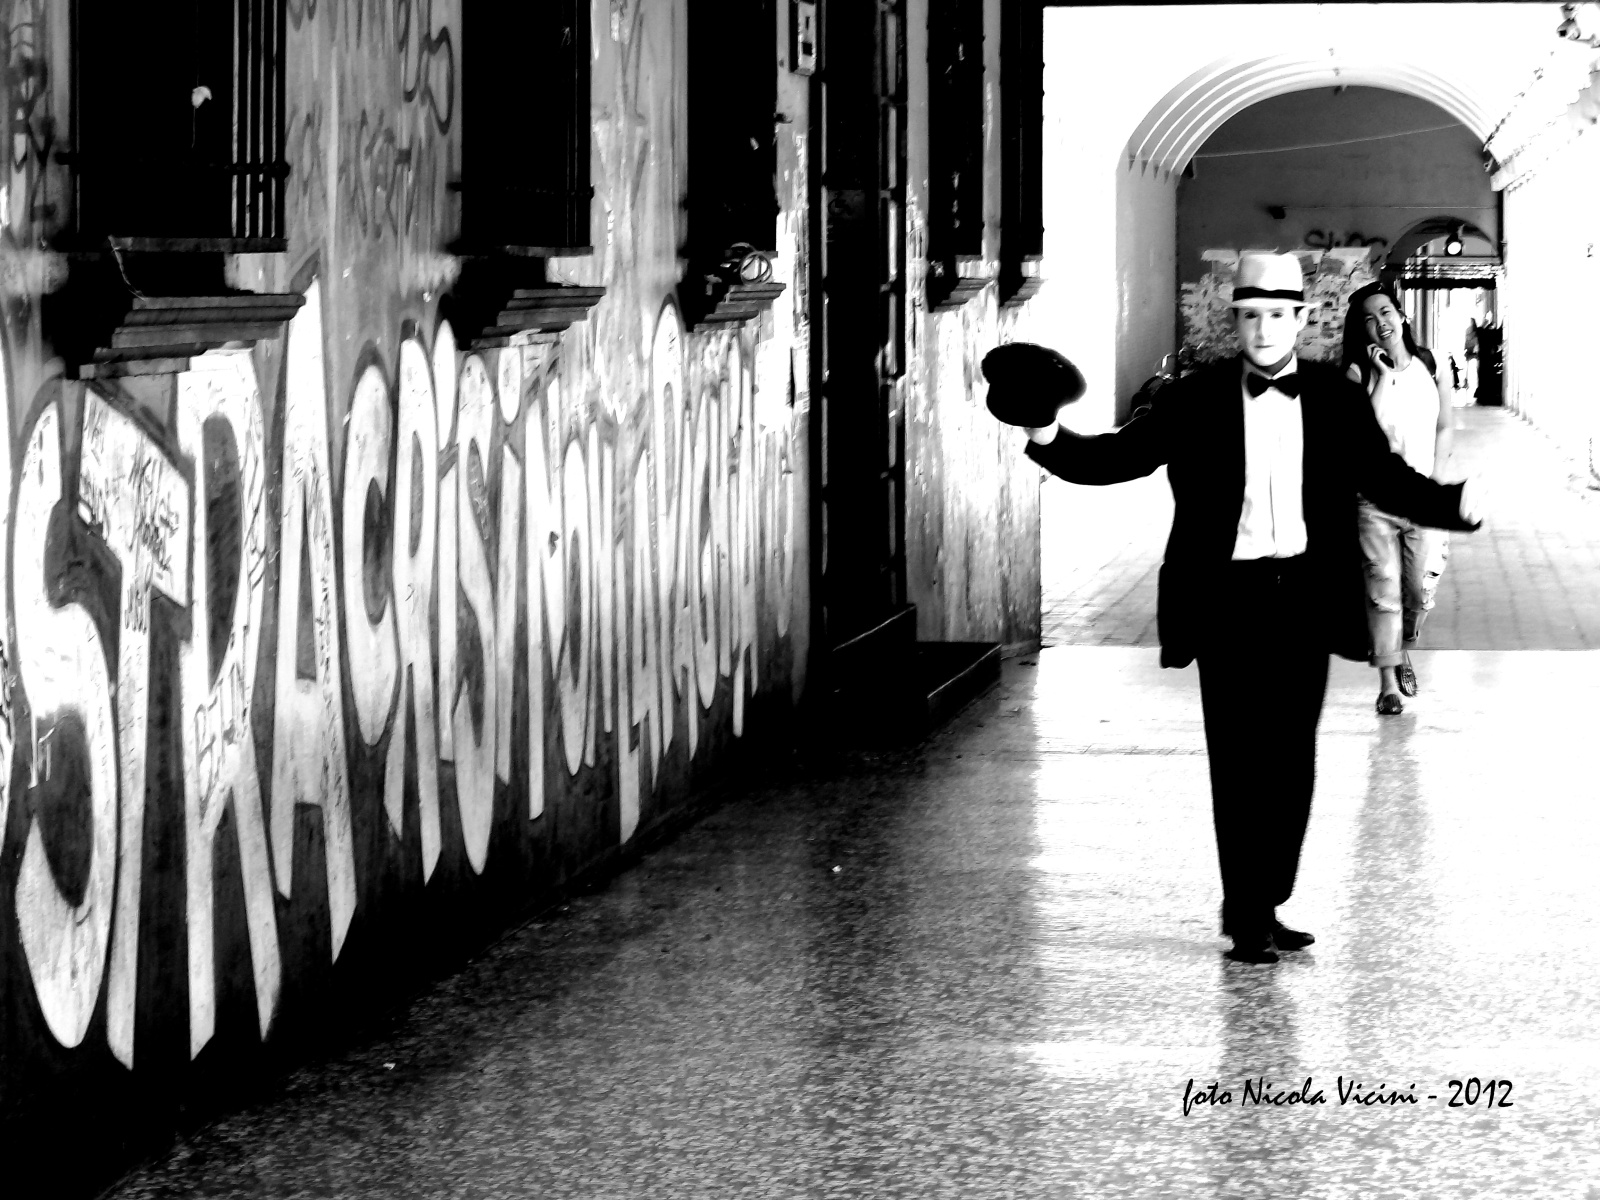 il mimo - Reportage a Bologna, 30 Maggio 2012 
Camminando sotto ai portici, cercando di raccontare in un immagine 
uno dei momenti del quotidiano di questa splendida città.
Tre soggetti, il murale, il mimo e la ragazza sorridente col telefonino 
raccontano tre storie differenti